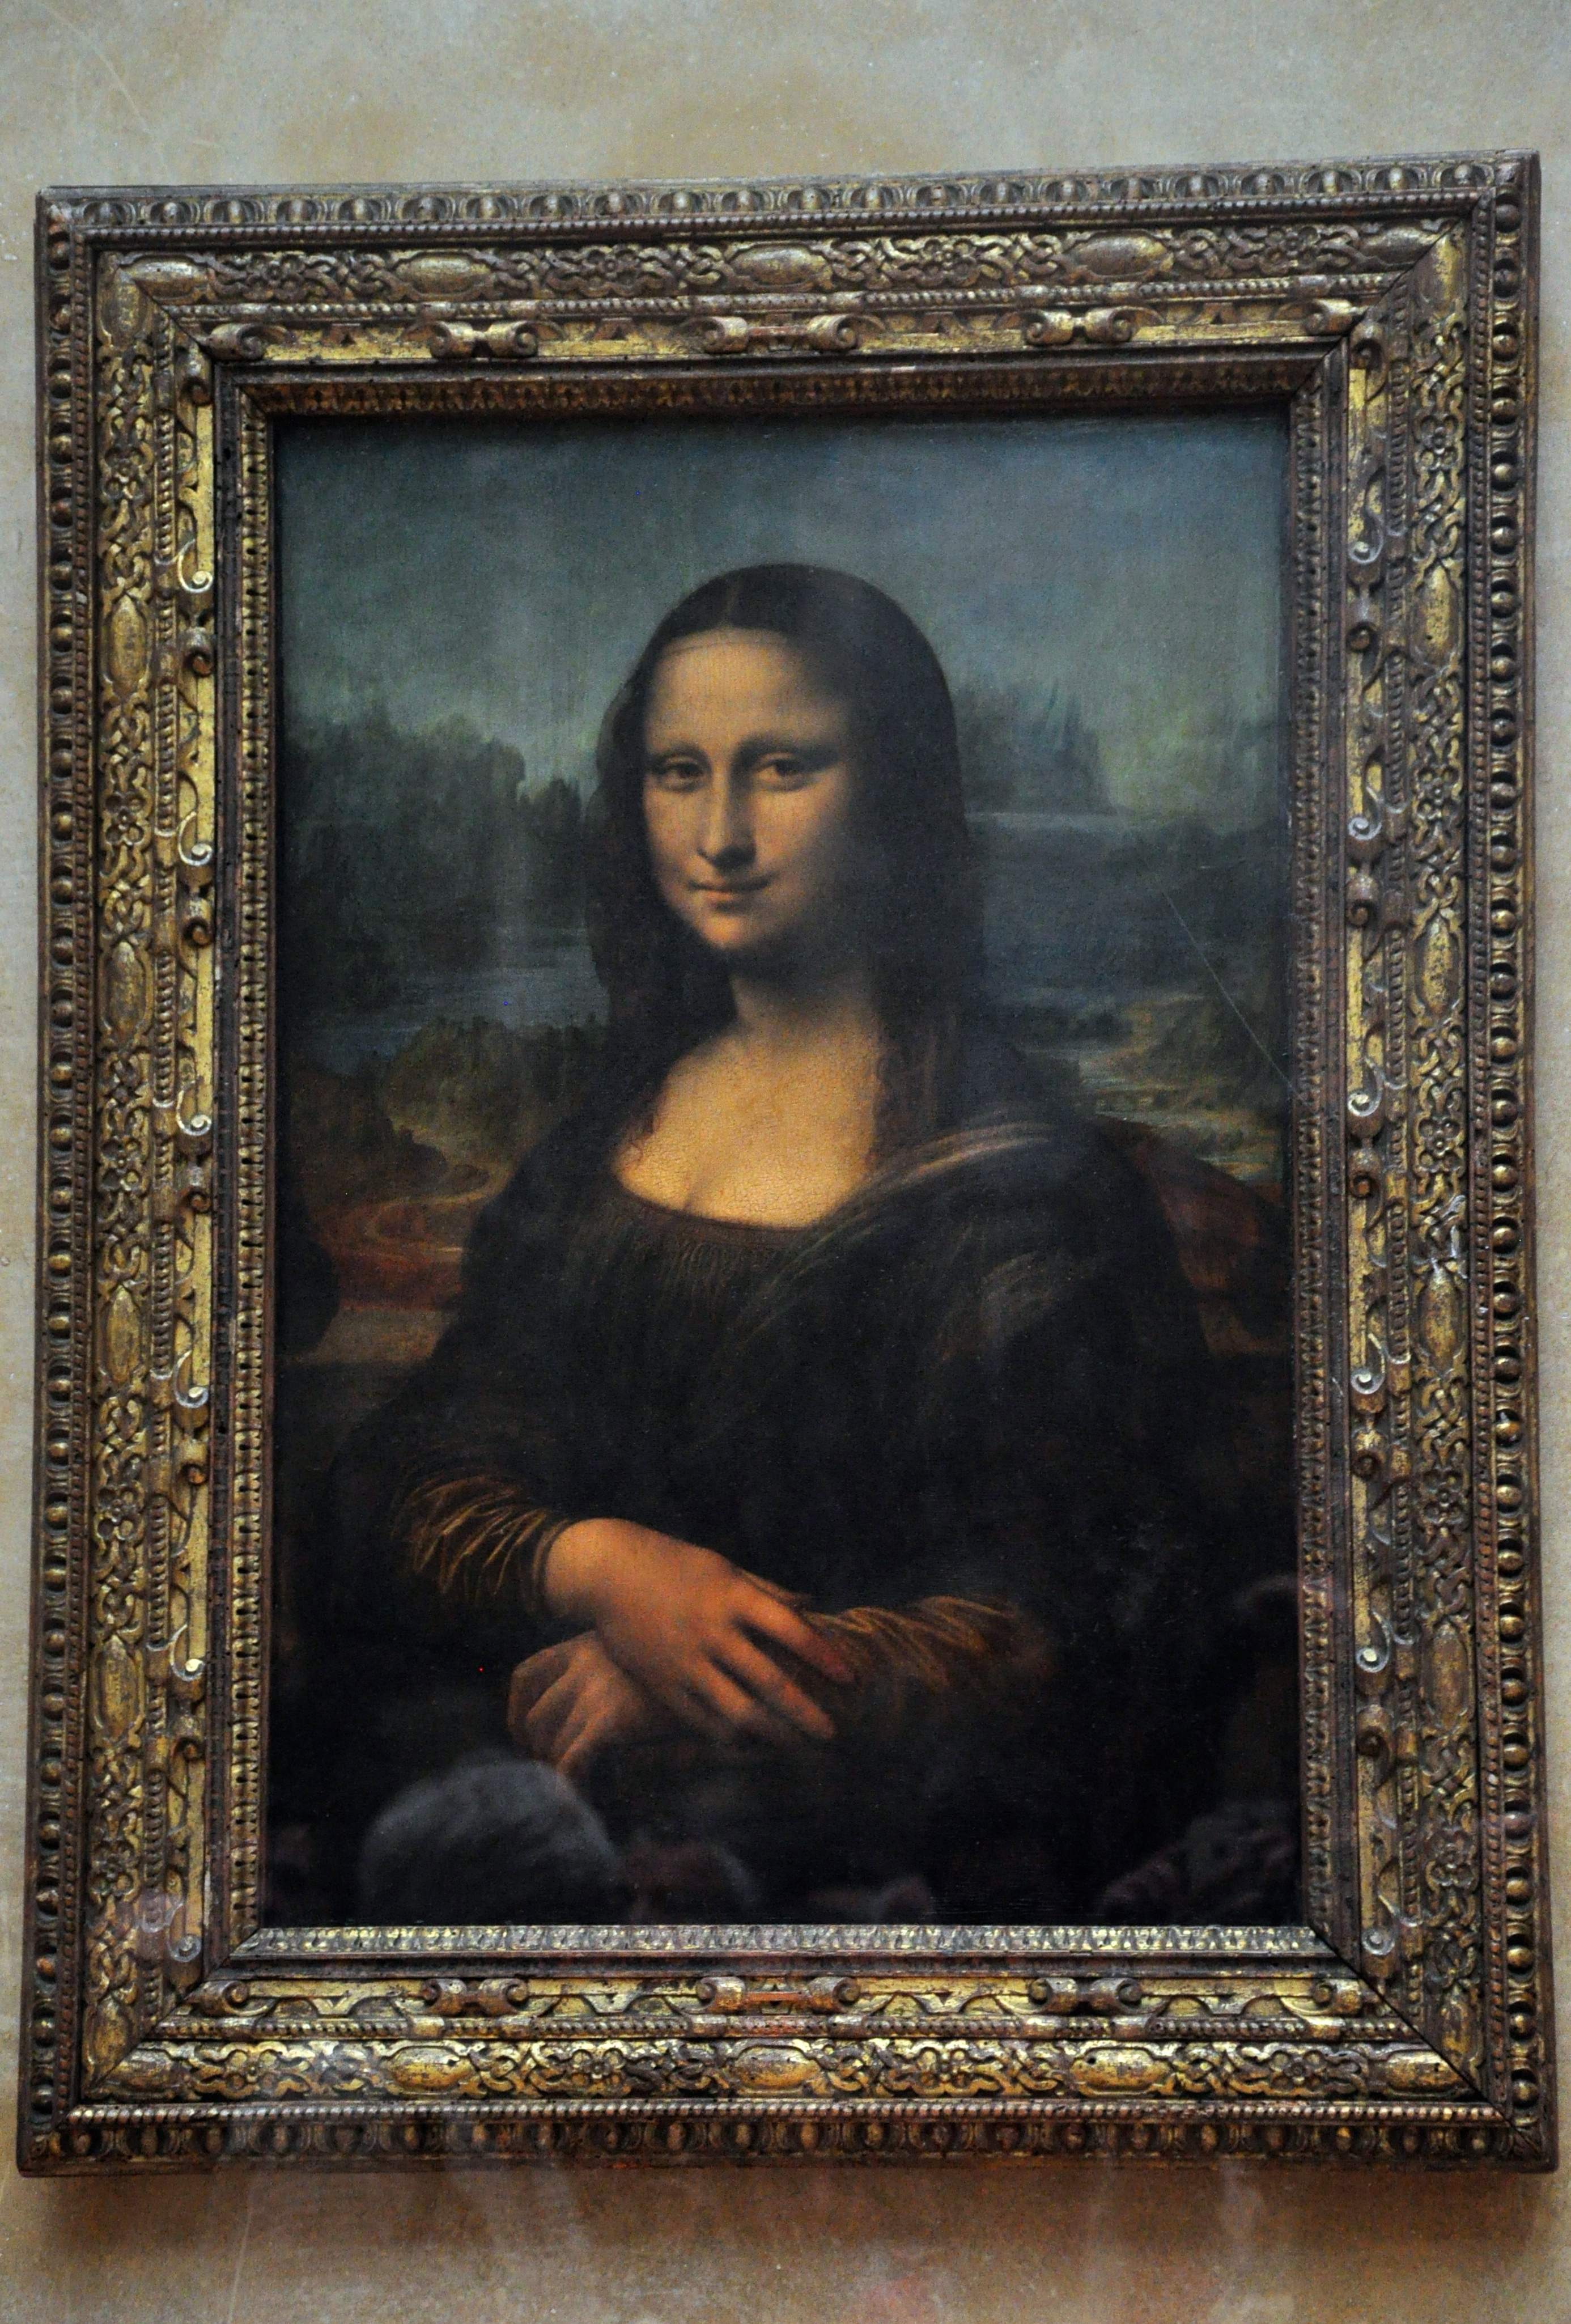 A Monalisa de Leonardo da Vinci.